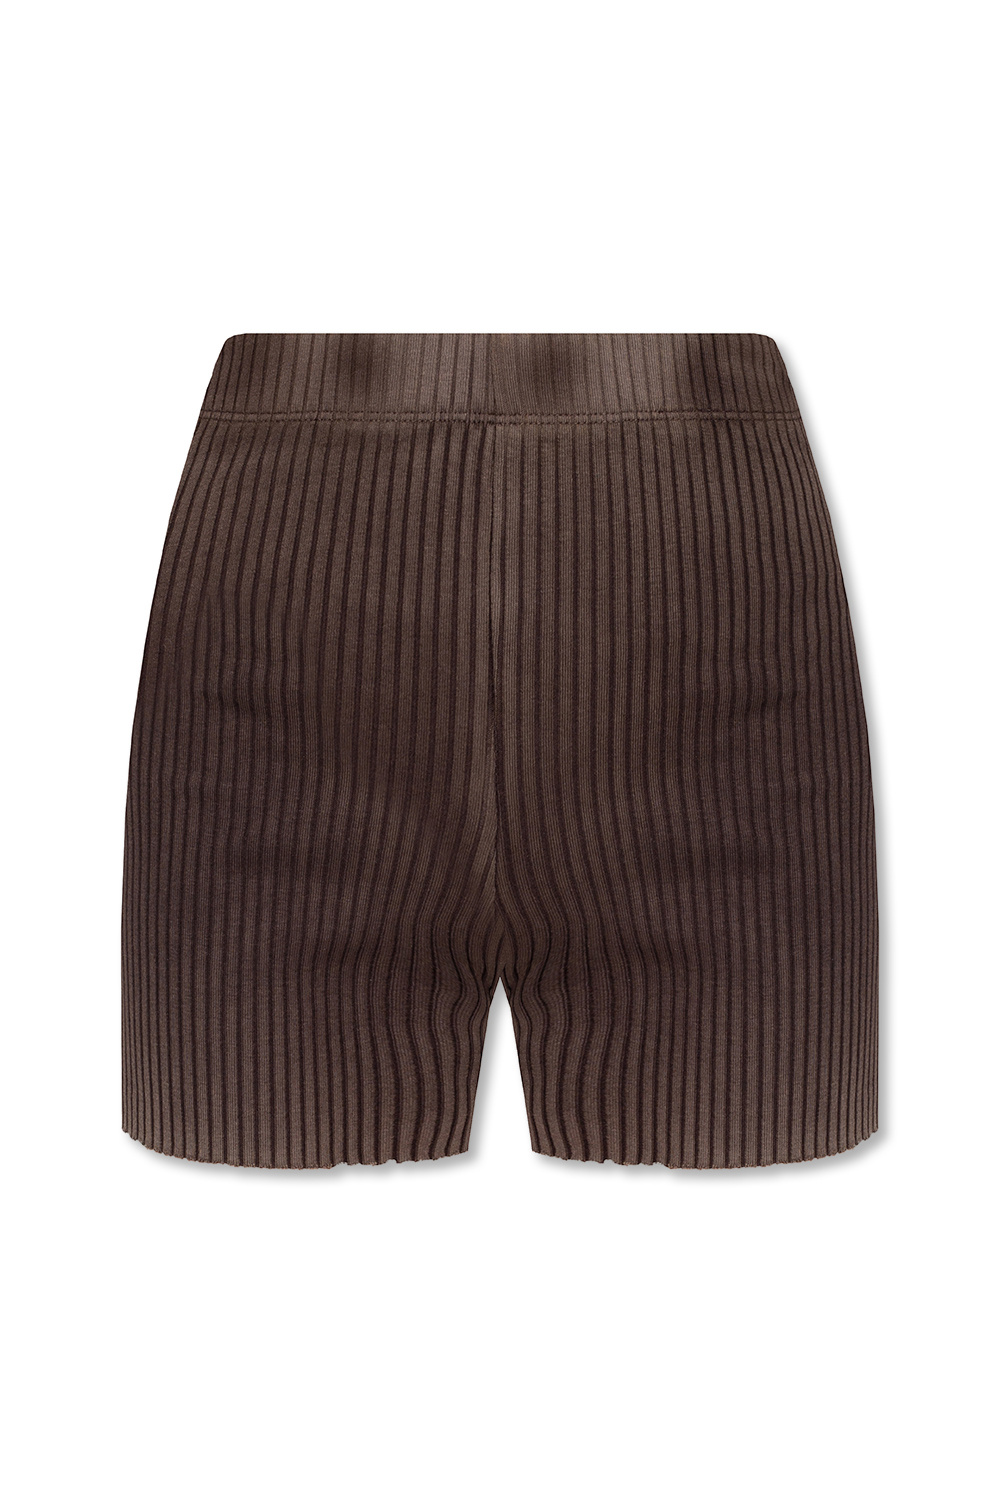 Cotton Citizen Distressed shorts